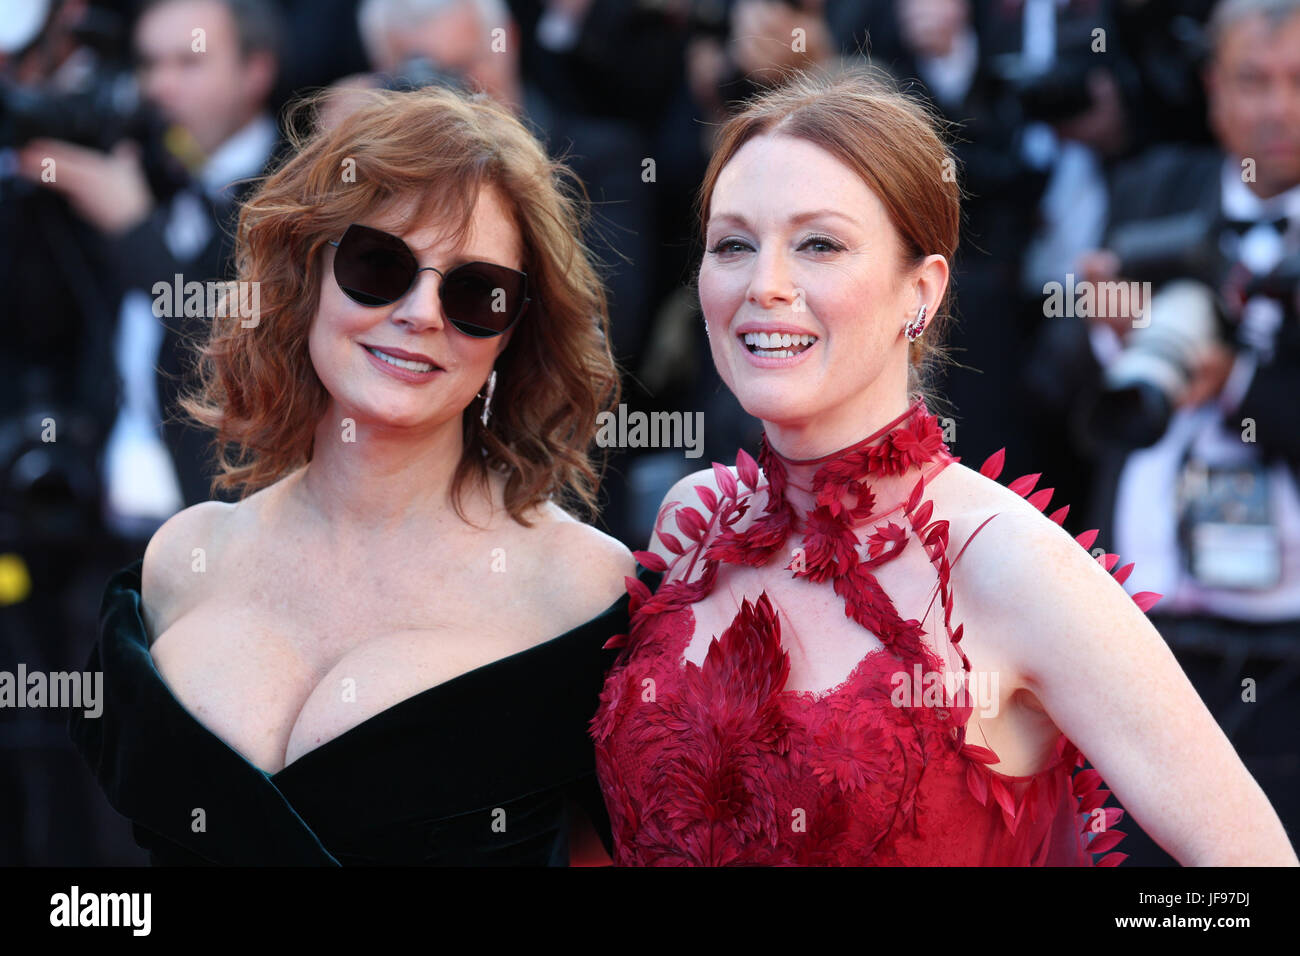 L'attrice Susan Sarandon (L) e Julianne Moore frequentare il Ismael i fantasmi di screening e di Gala di apertura durante il settantesimo annuale di Cannes Film Festival presso il Palais des Festivals, 17 maggio 2017 a Cannes, Francia. Foto Stock